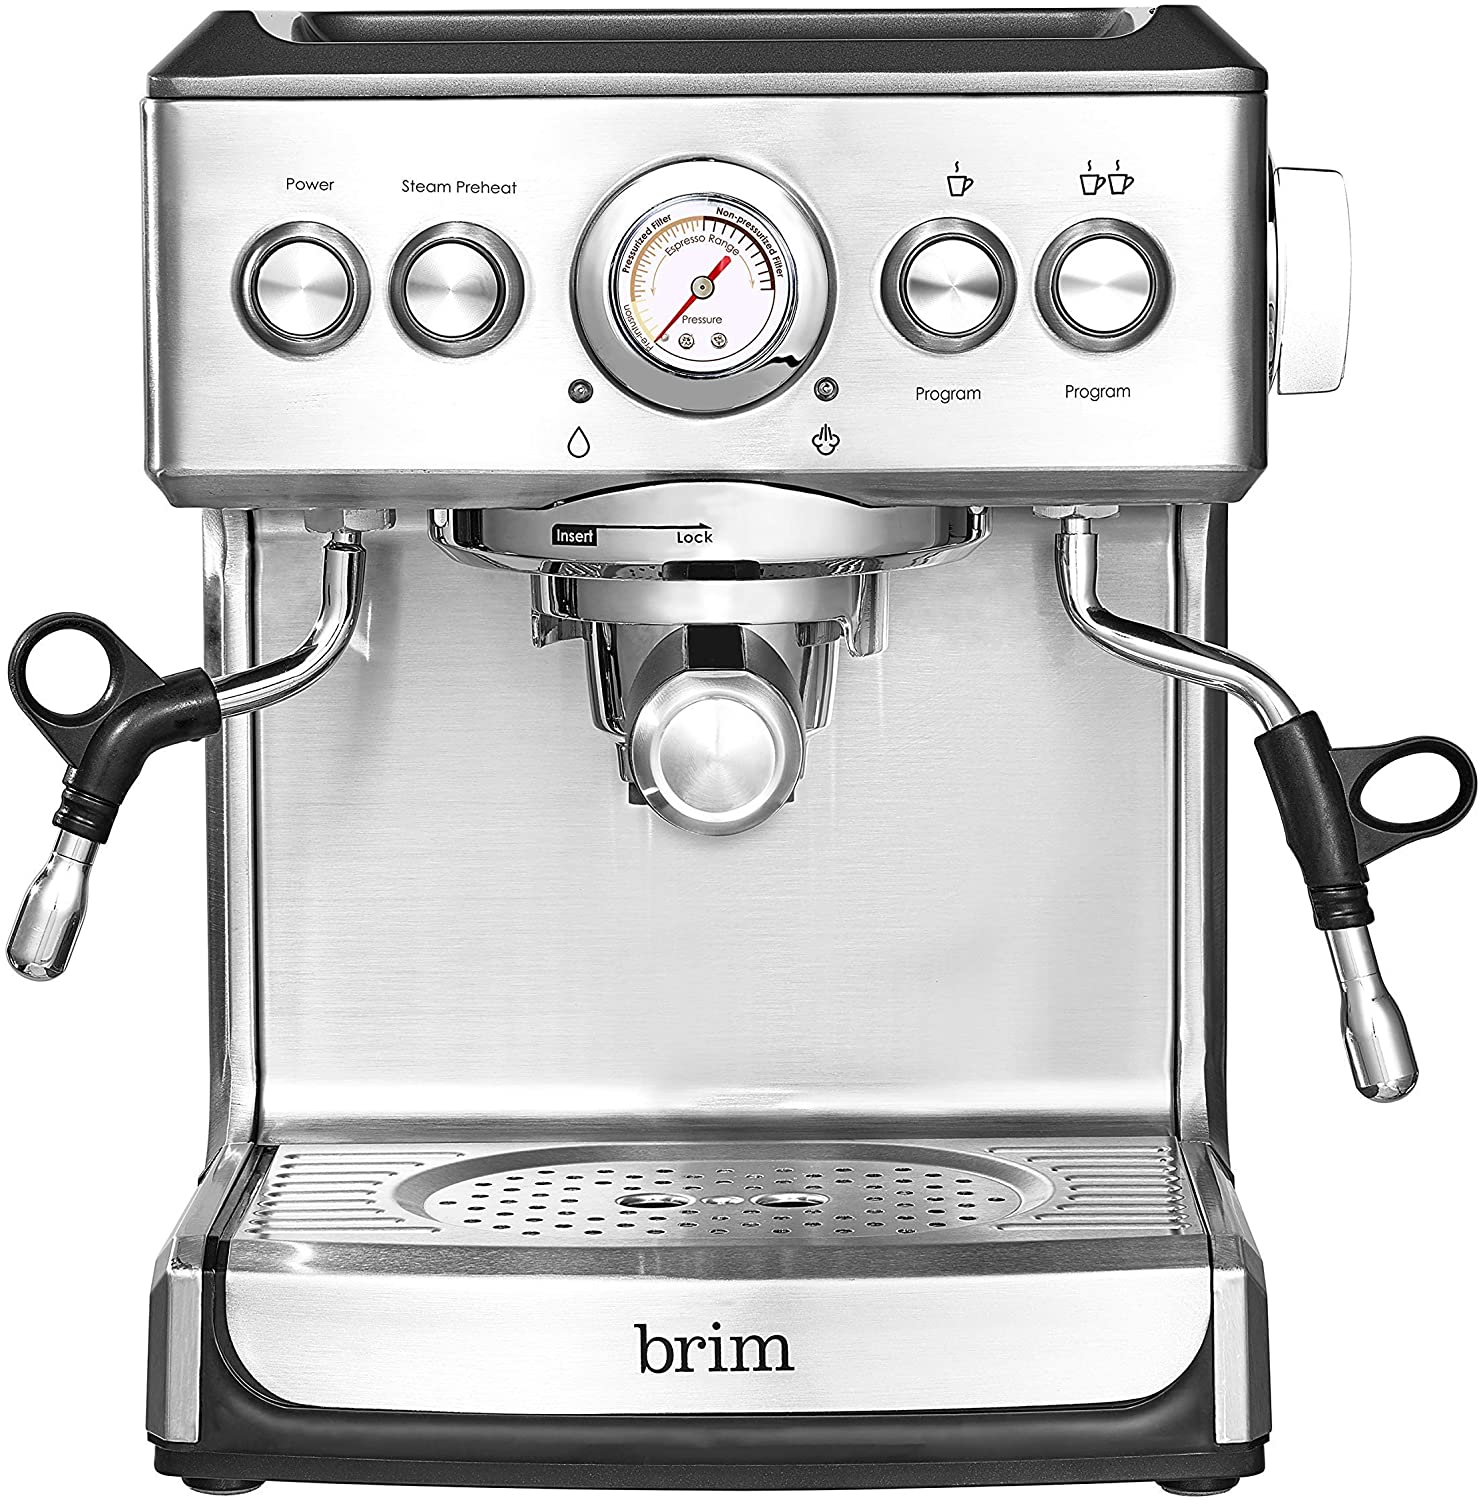 Brim 19 Bar Espresso Machine $250 + Free Shipping